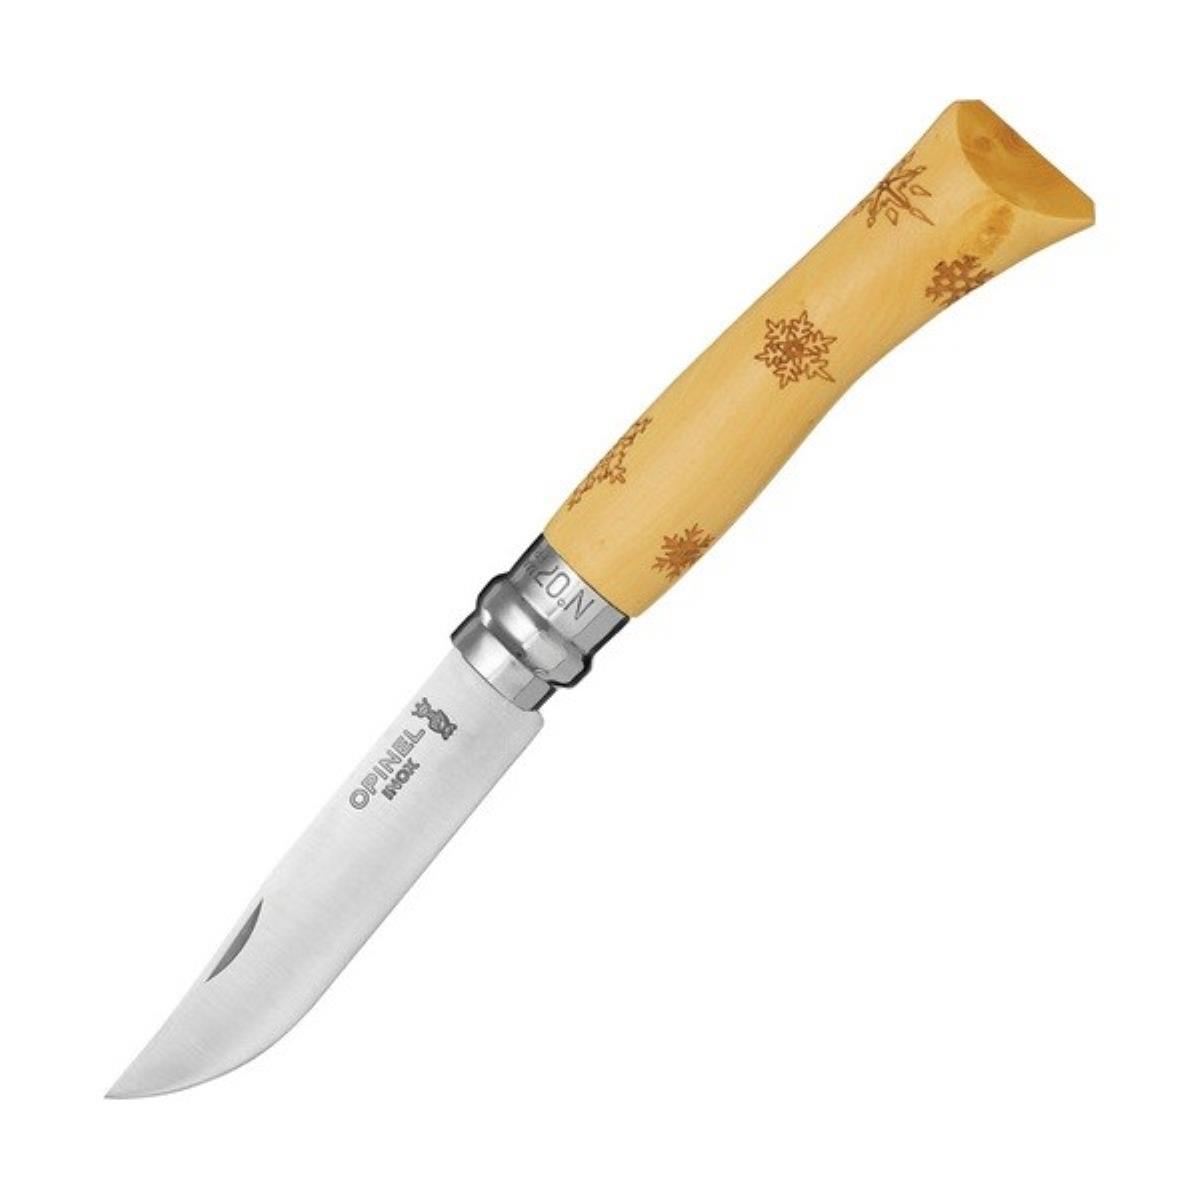 Нож №7 VRI Nature-Snow (снежинки) нержавеющая сталь, рукоять самшит, длина клинка 8см OPINEL brit premium by nature консервы для собак 850 гр